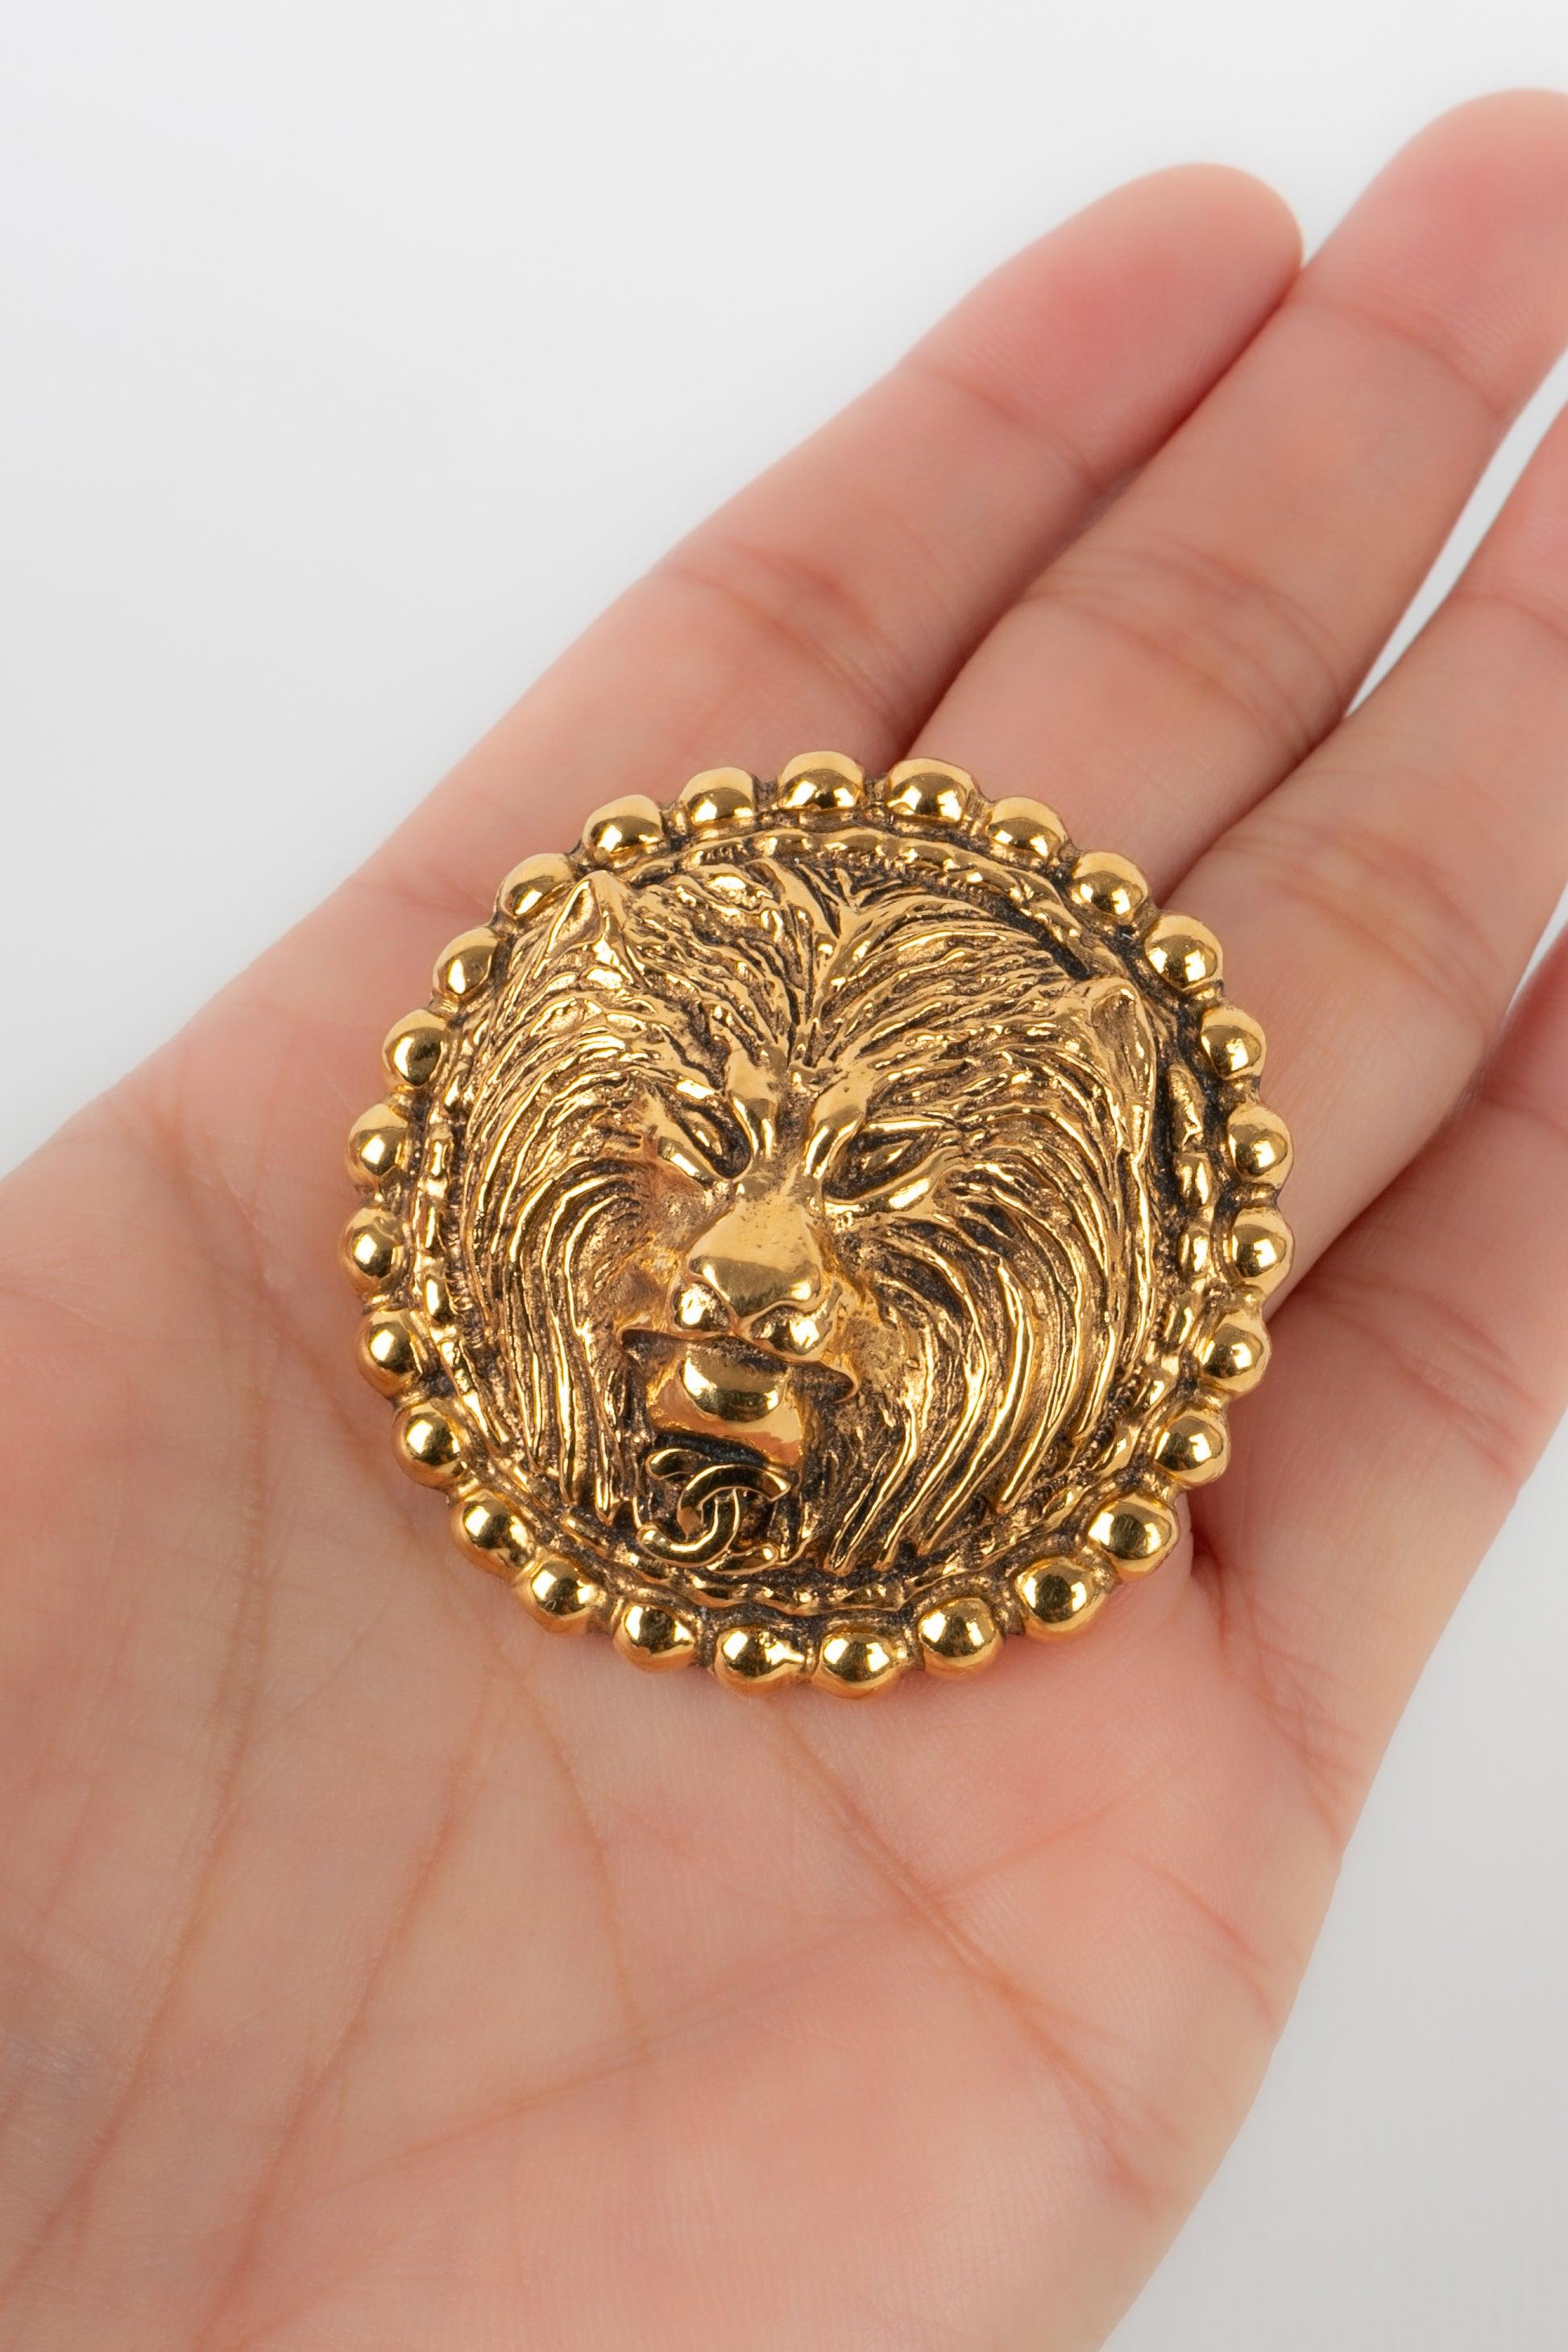 Chanel - Broche en métal doré représentant une tête de lion. Collectional 1983.

Informations complémentaires :
Condit : Très bon état.
Dimensions : Diamètre : 4,5 cm

Référence du vendeur : BRB77